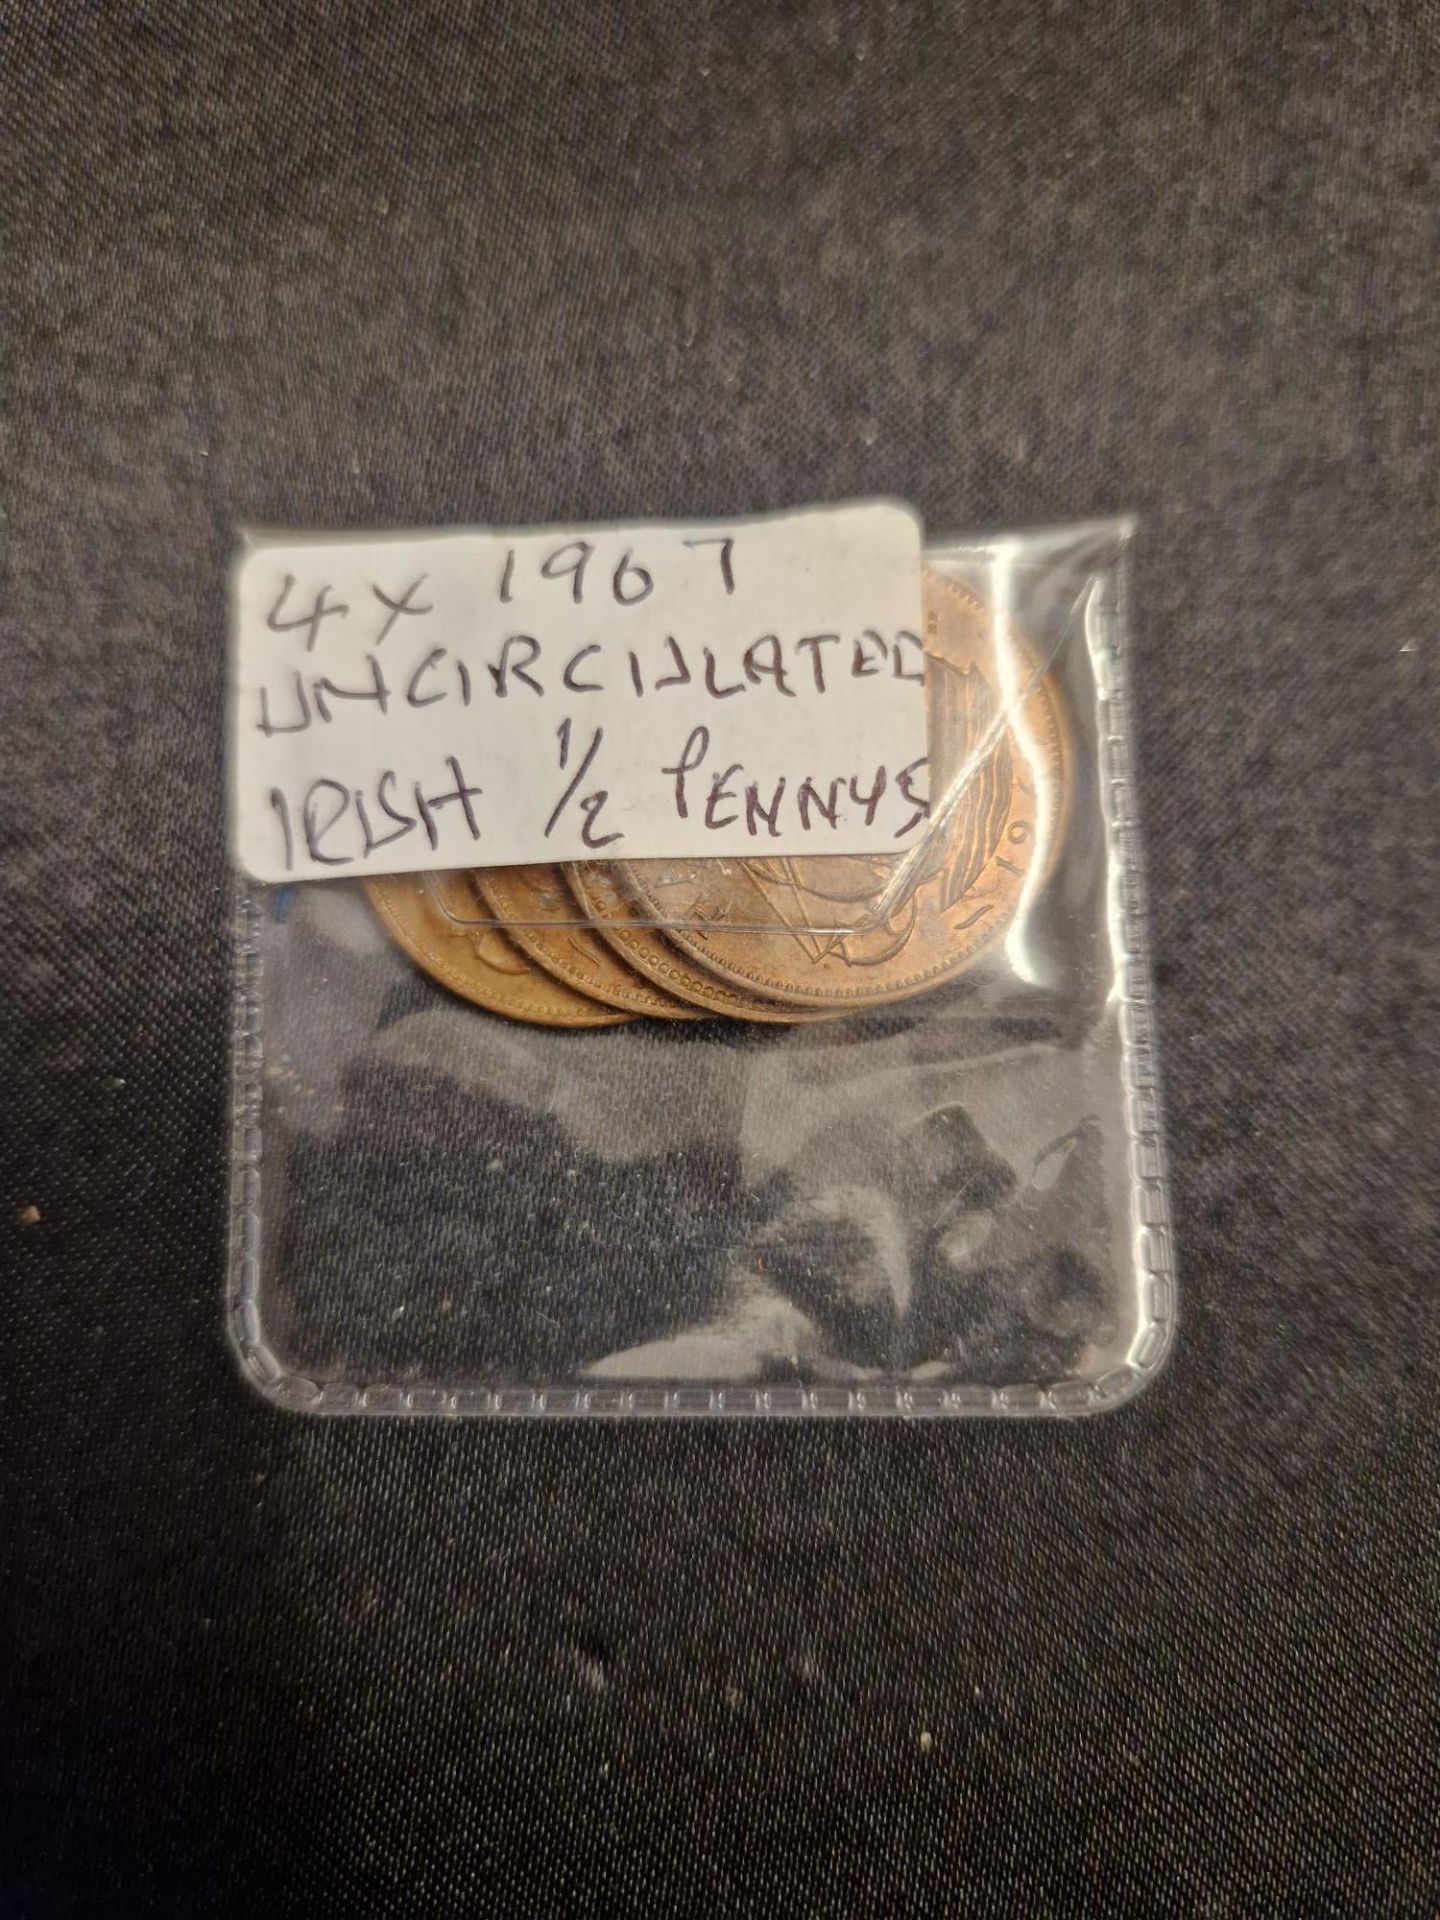 4 x 1967 irish 1/2 pennys